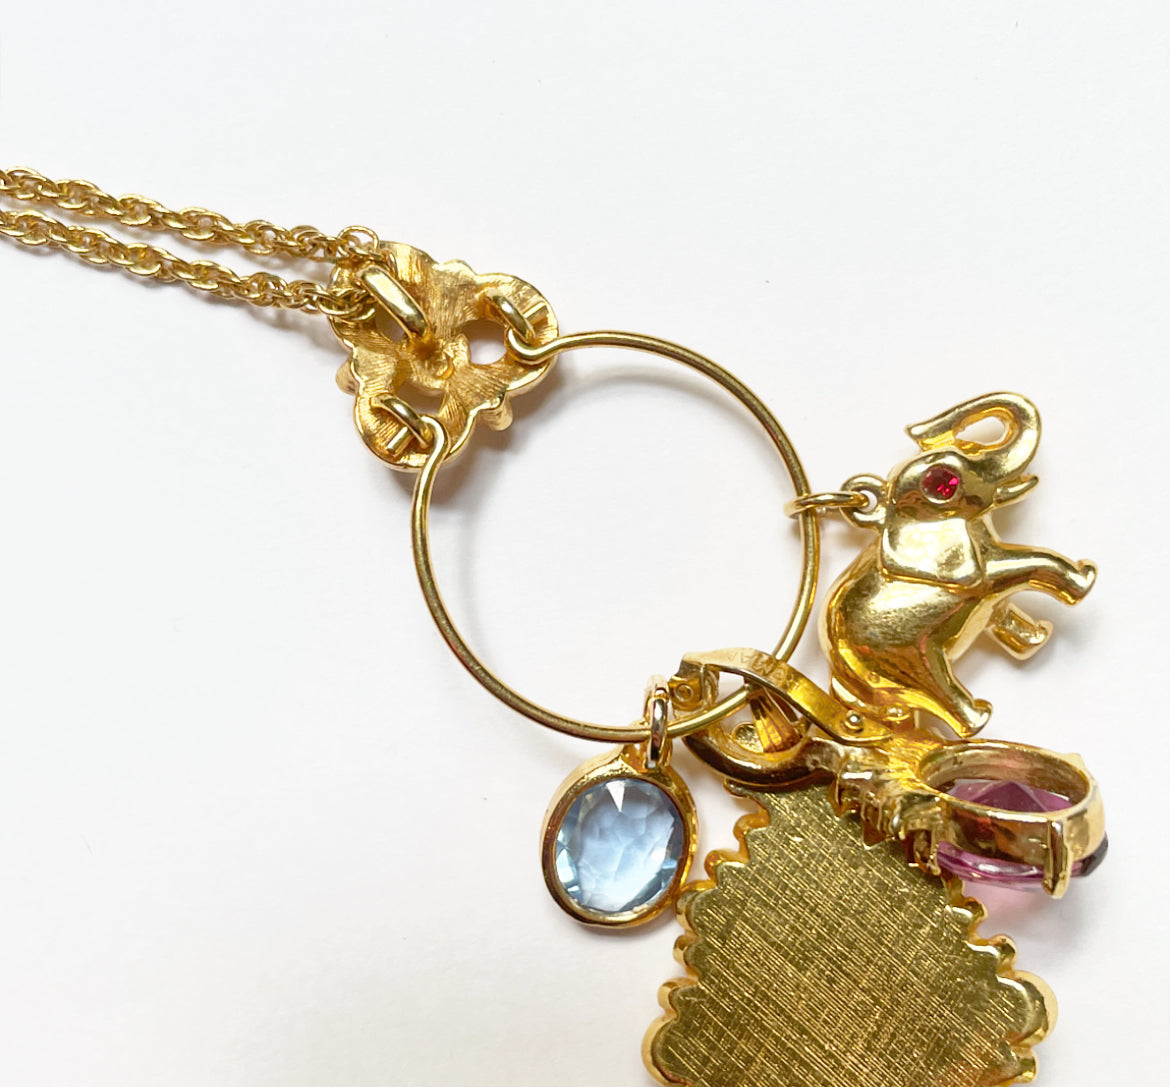 Vintage charm slider necklace